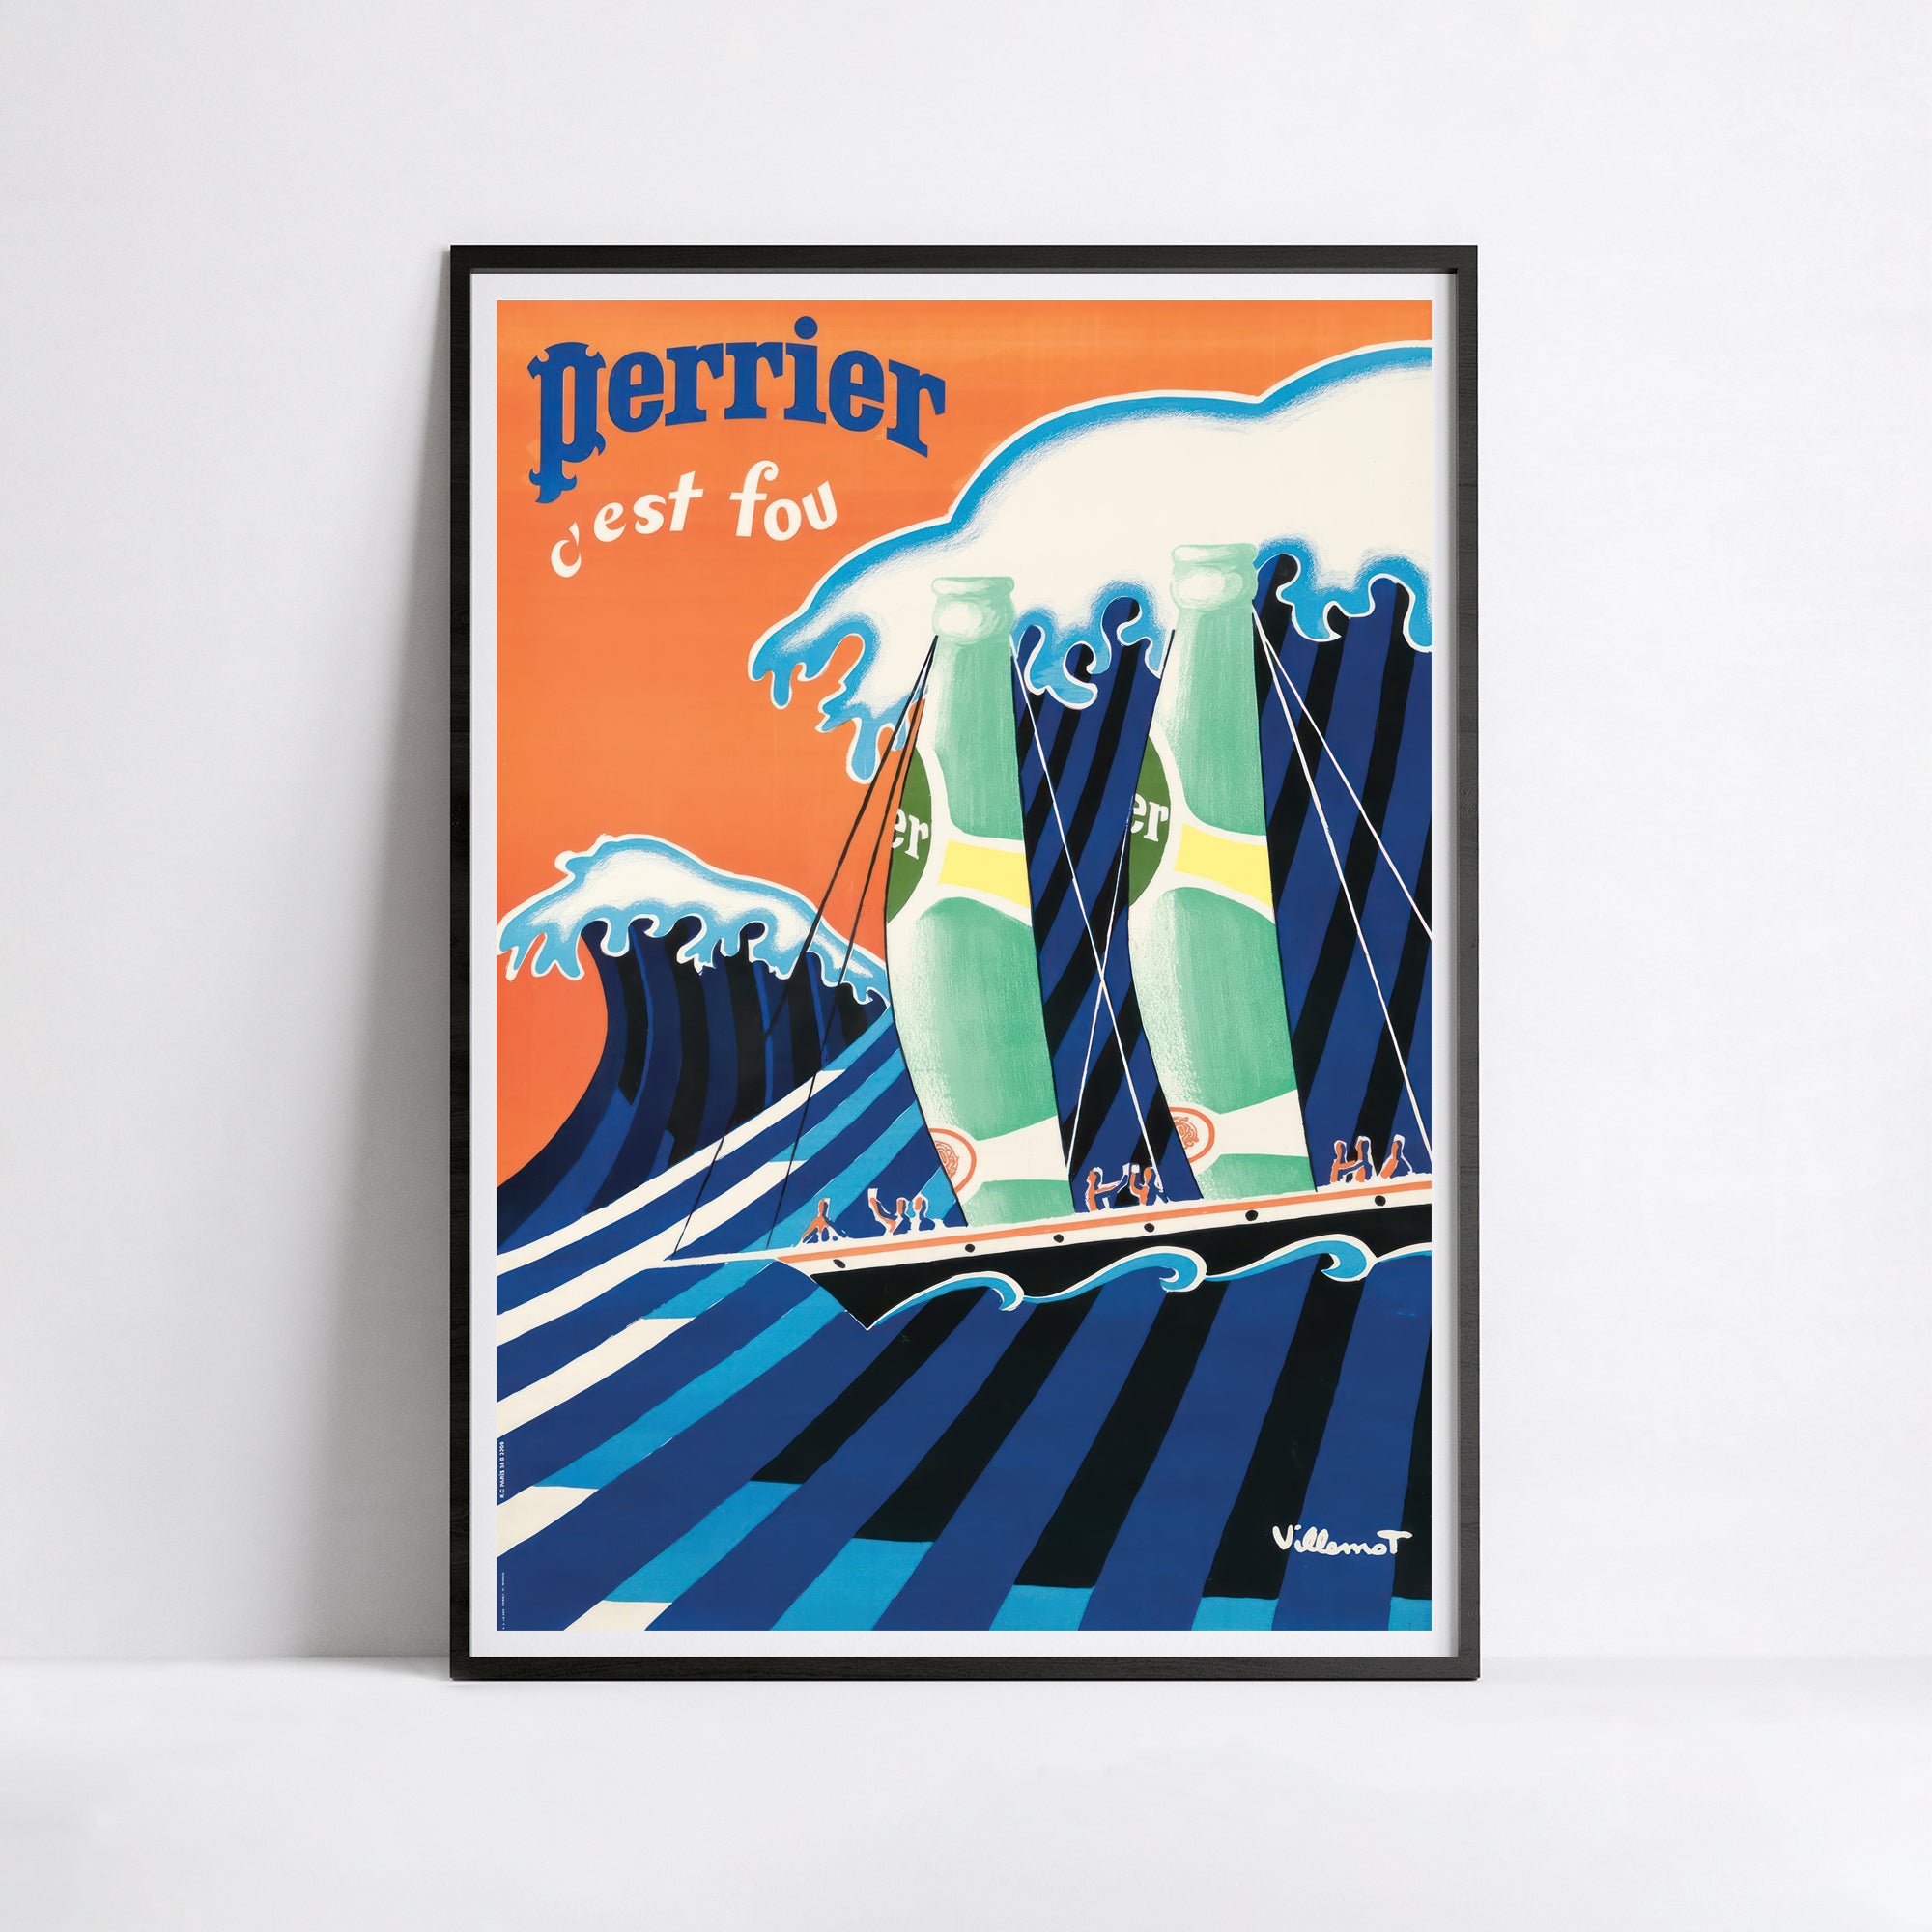 Perrier-Poster „Voiliers Perrier“ – Villemot – High Definition – mattes Papier 230 g/m²